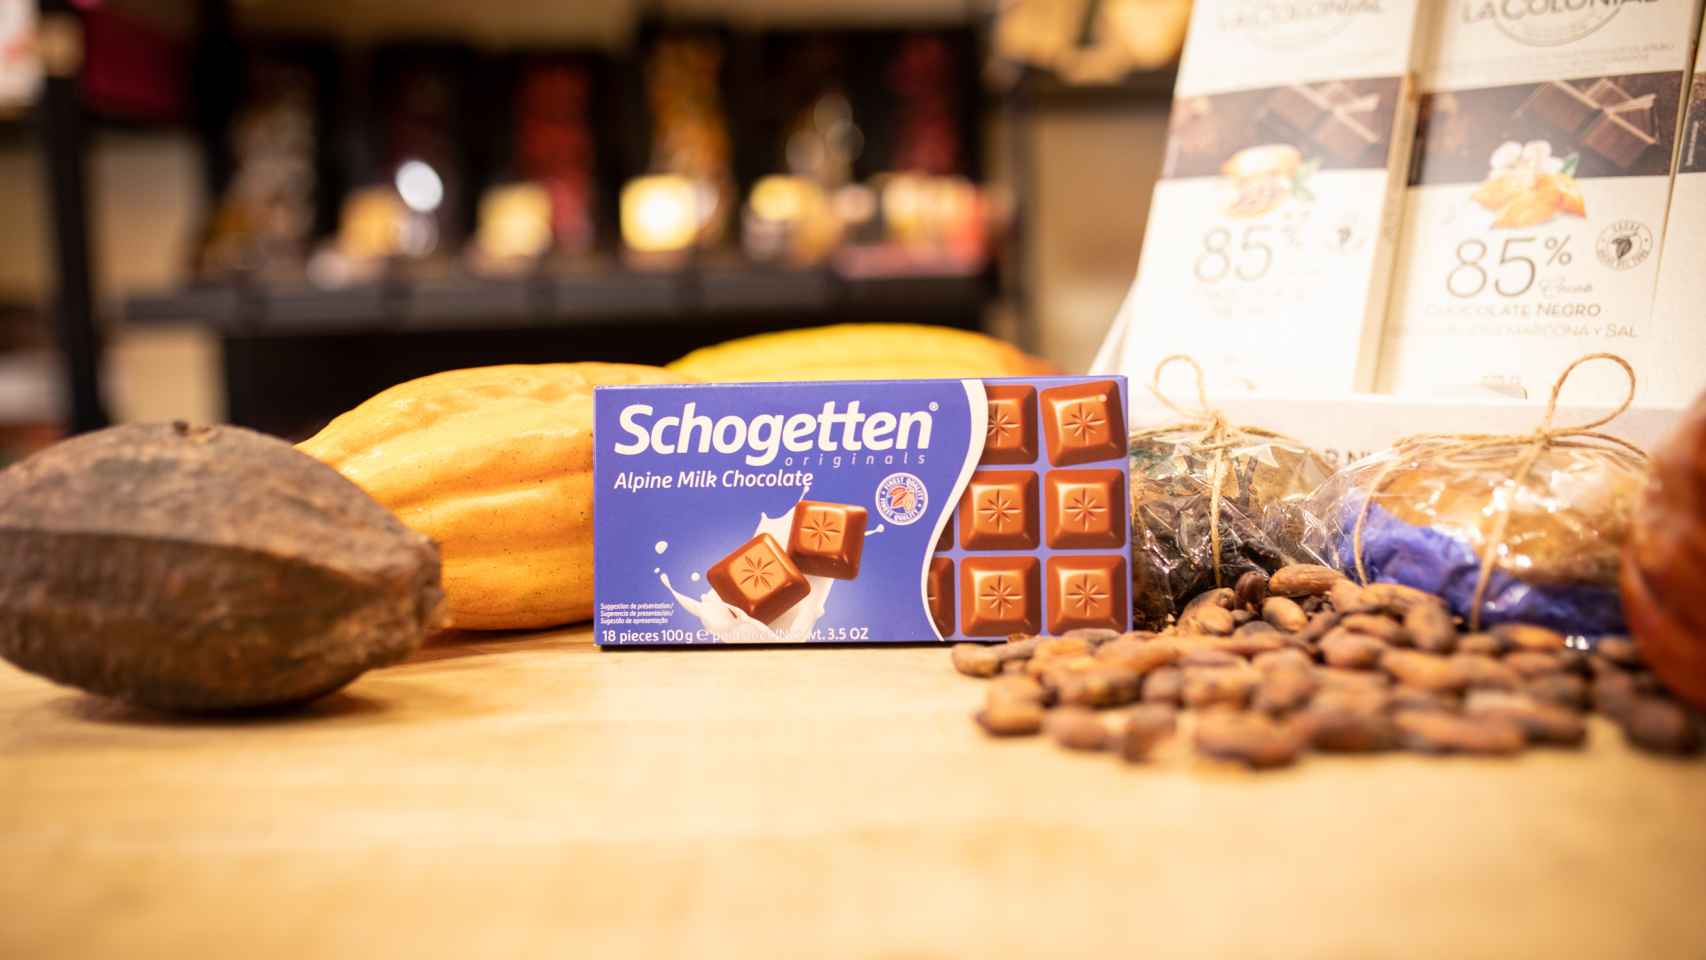 La tableta de chocolate con leche Schogetten, la marca blanca de Aldi.